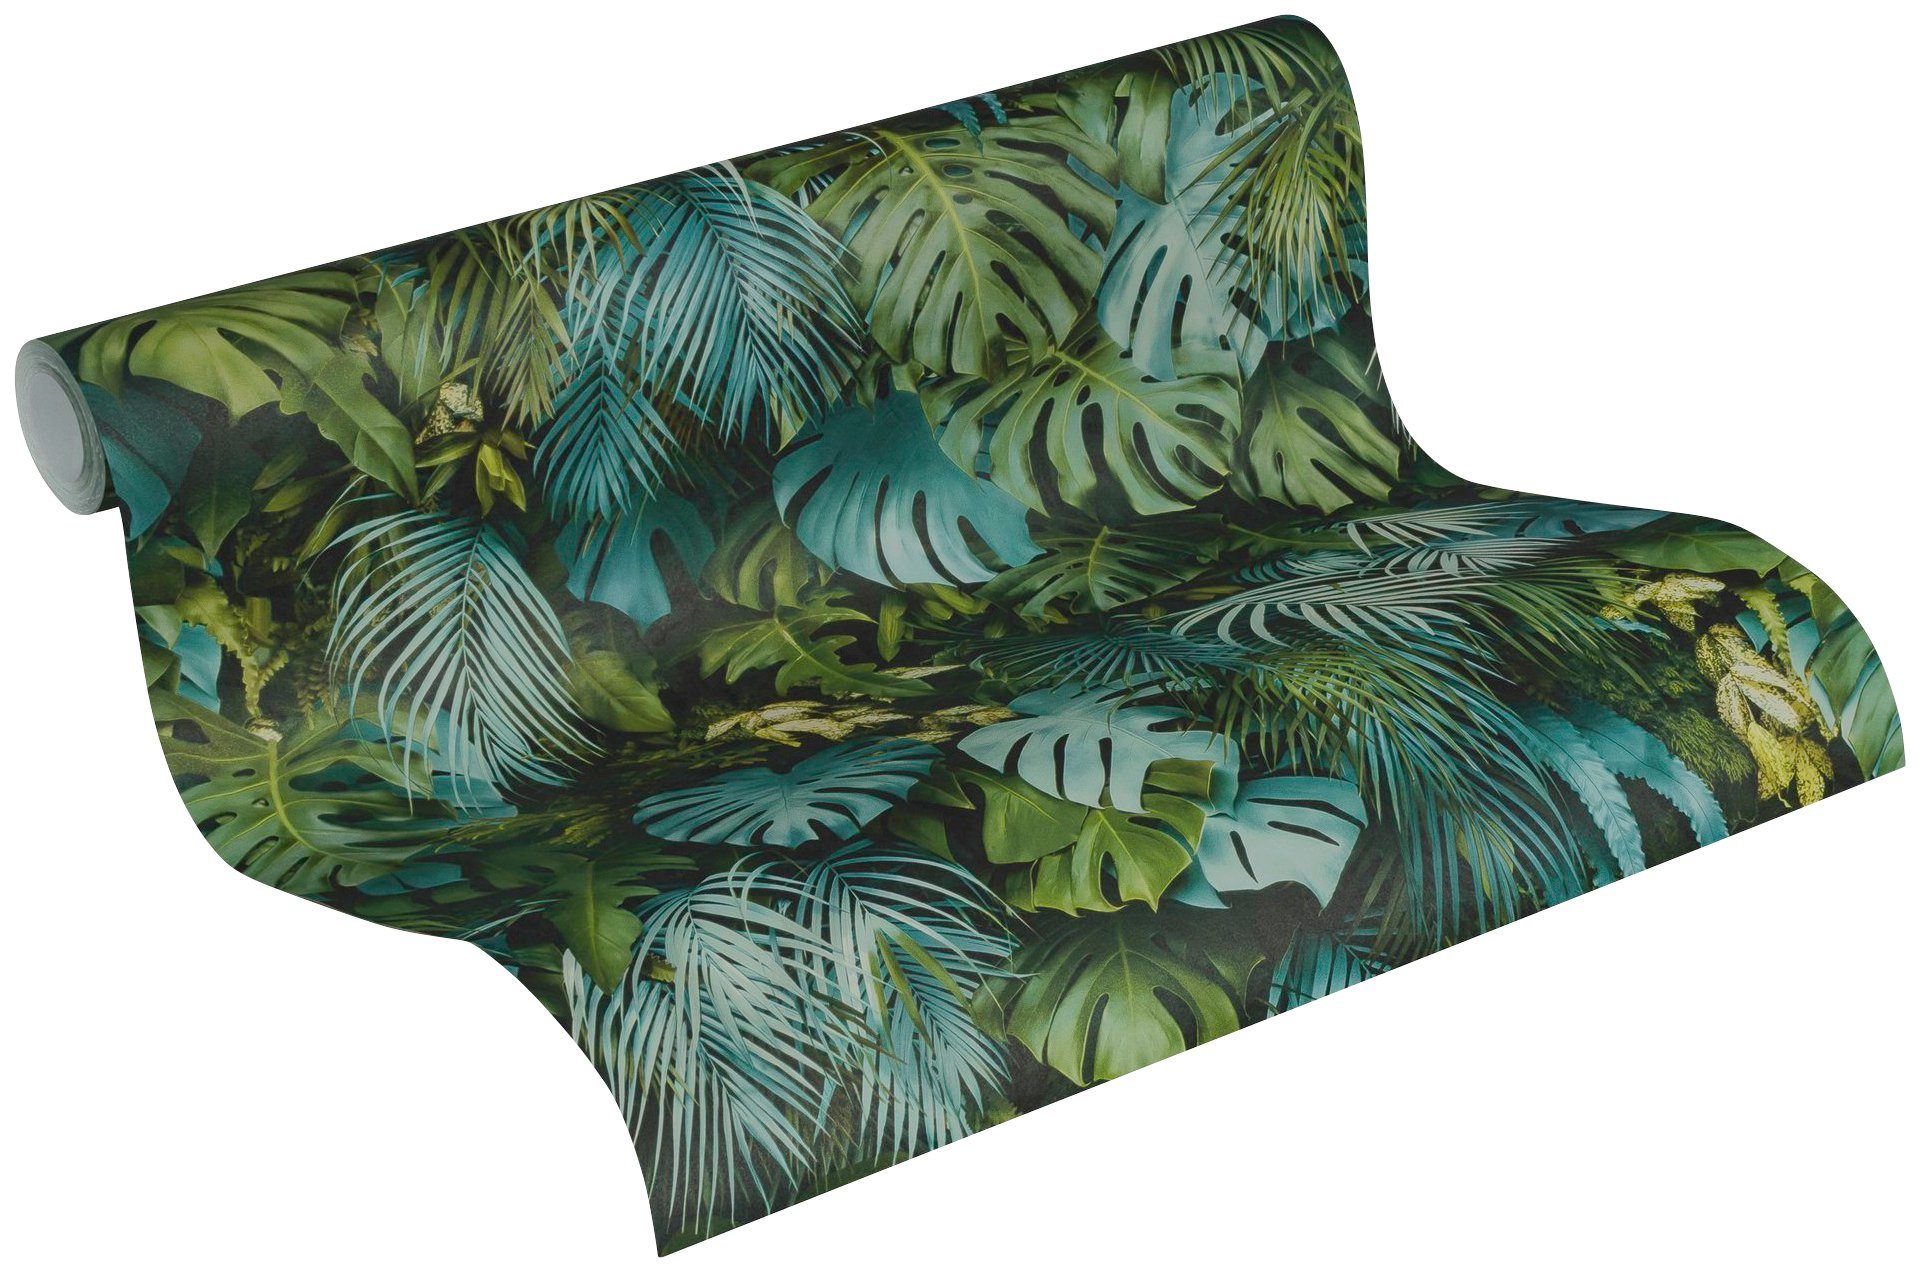 A.S. Création Vliestapete Greenery Palmenprint Dschungel Optik, floral, Tapete in mit Palmentapete Dschungel bunt/blau